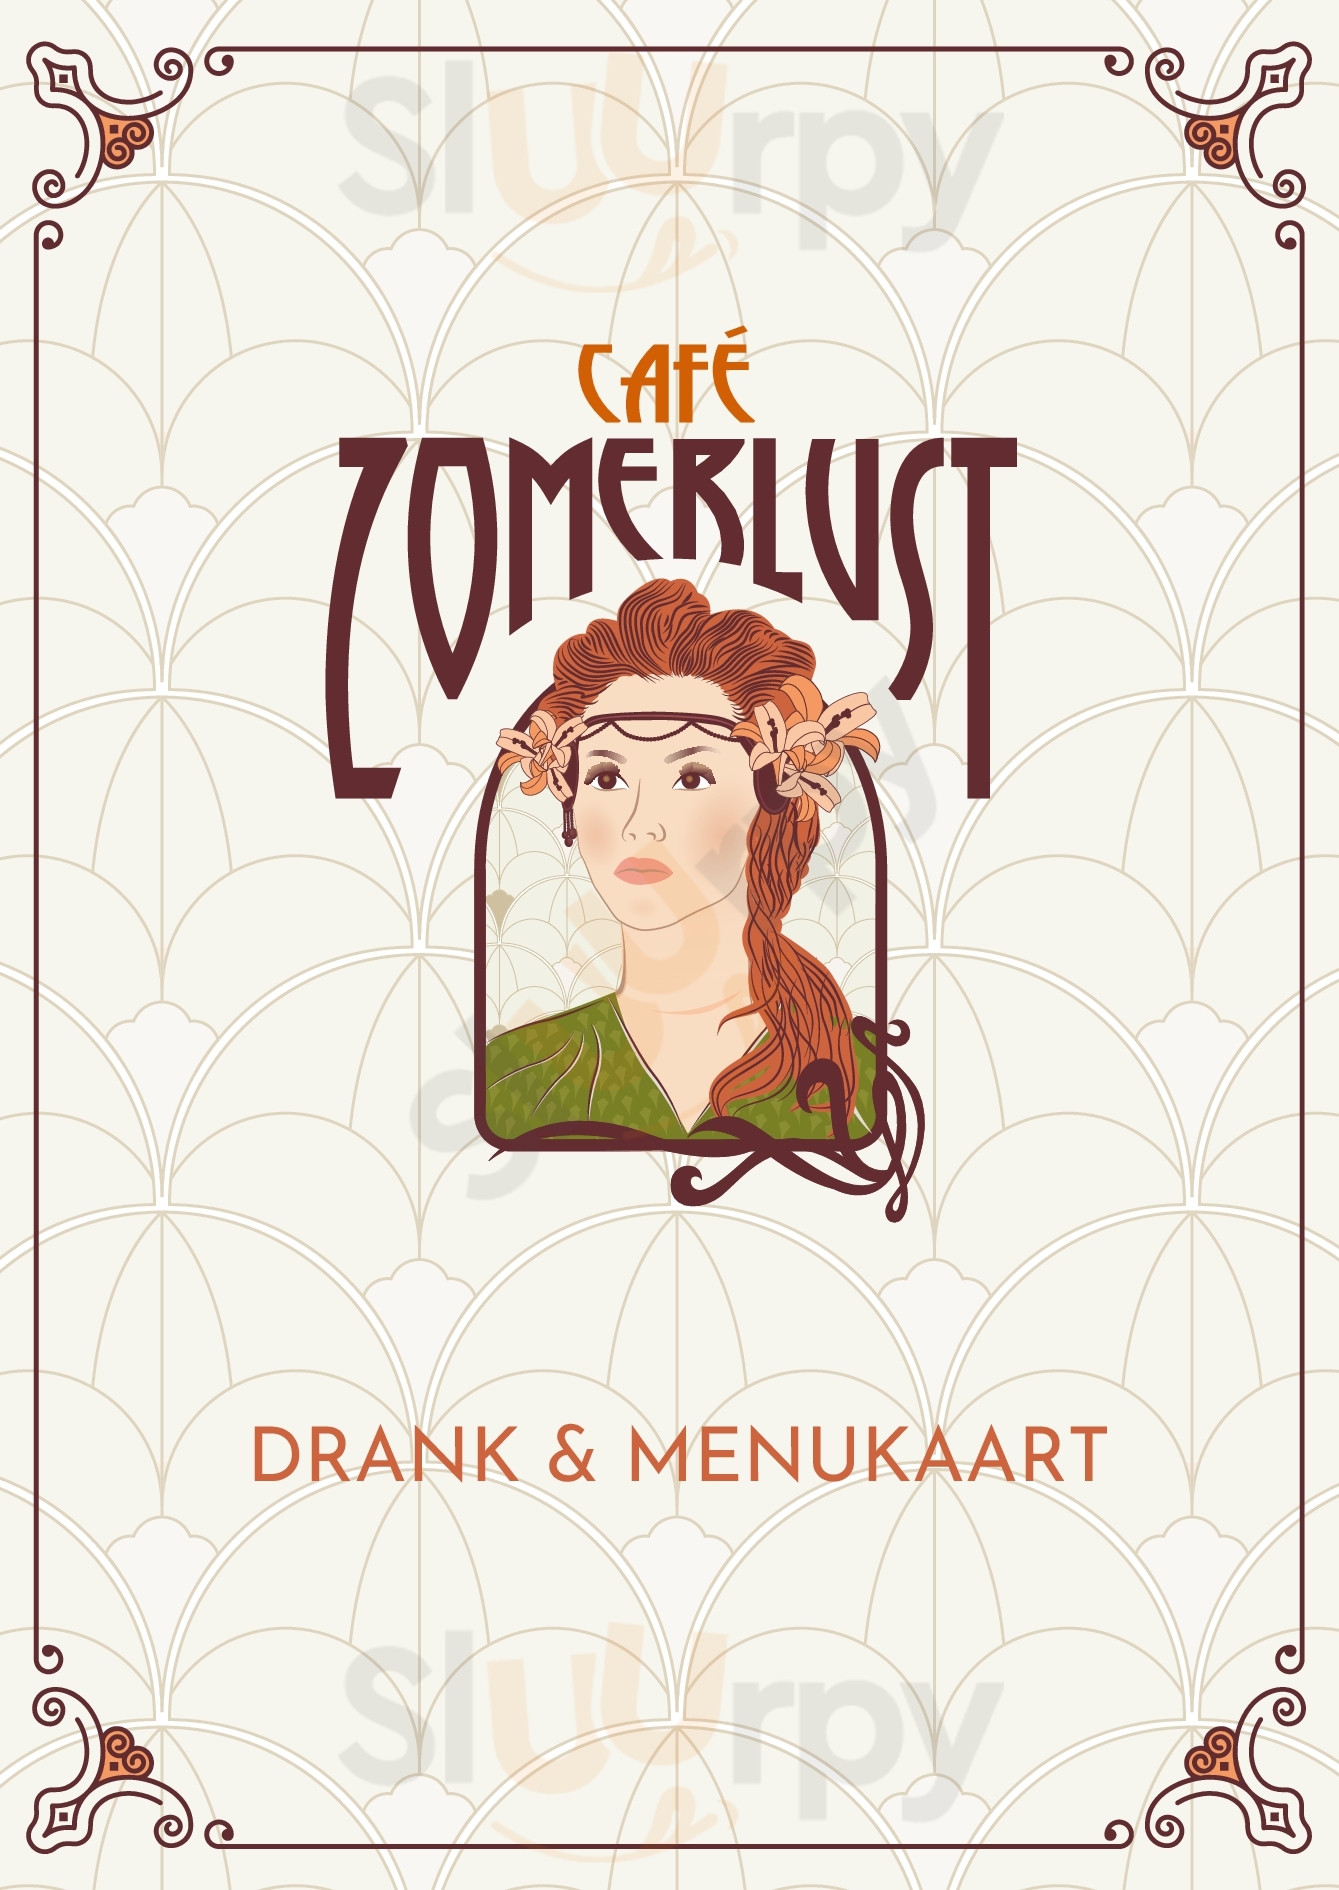 Cafe Zomerlust Tilburg Menu - 1